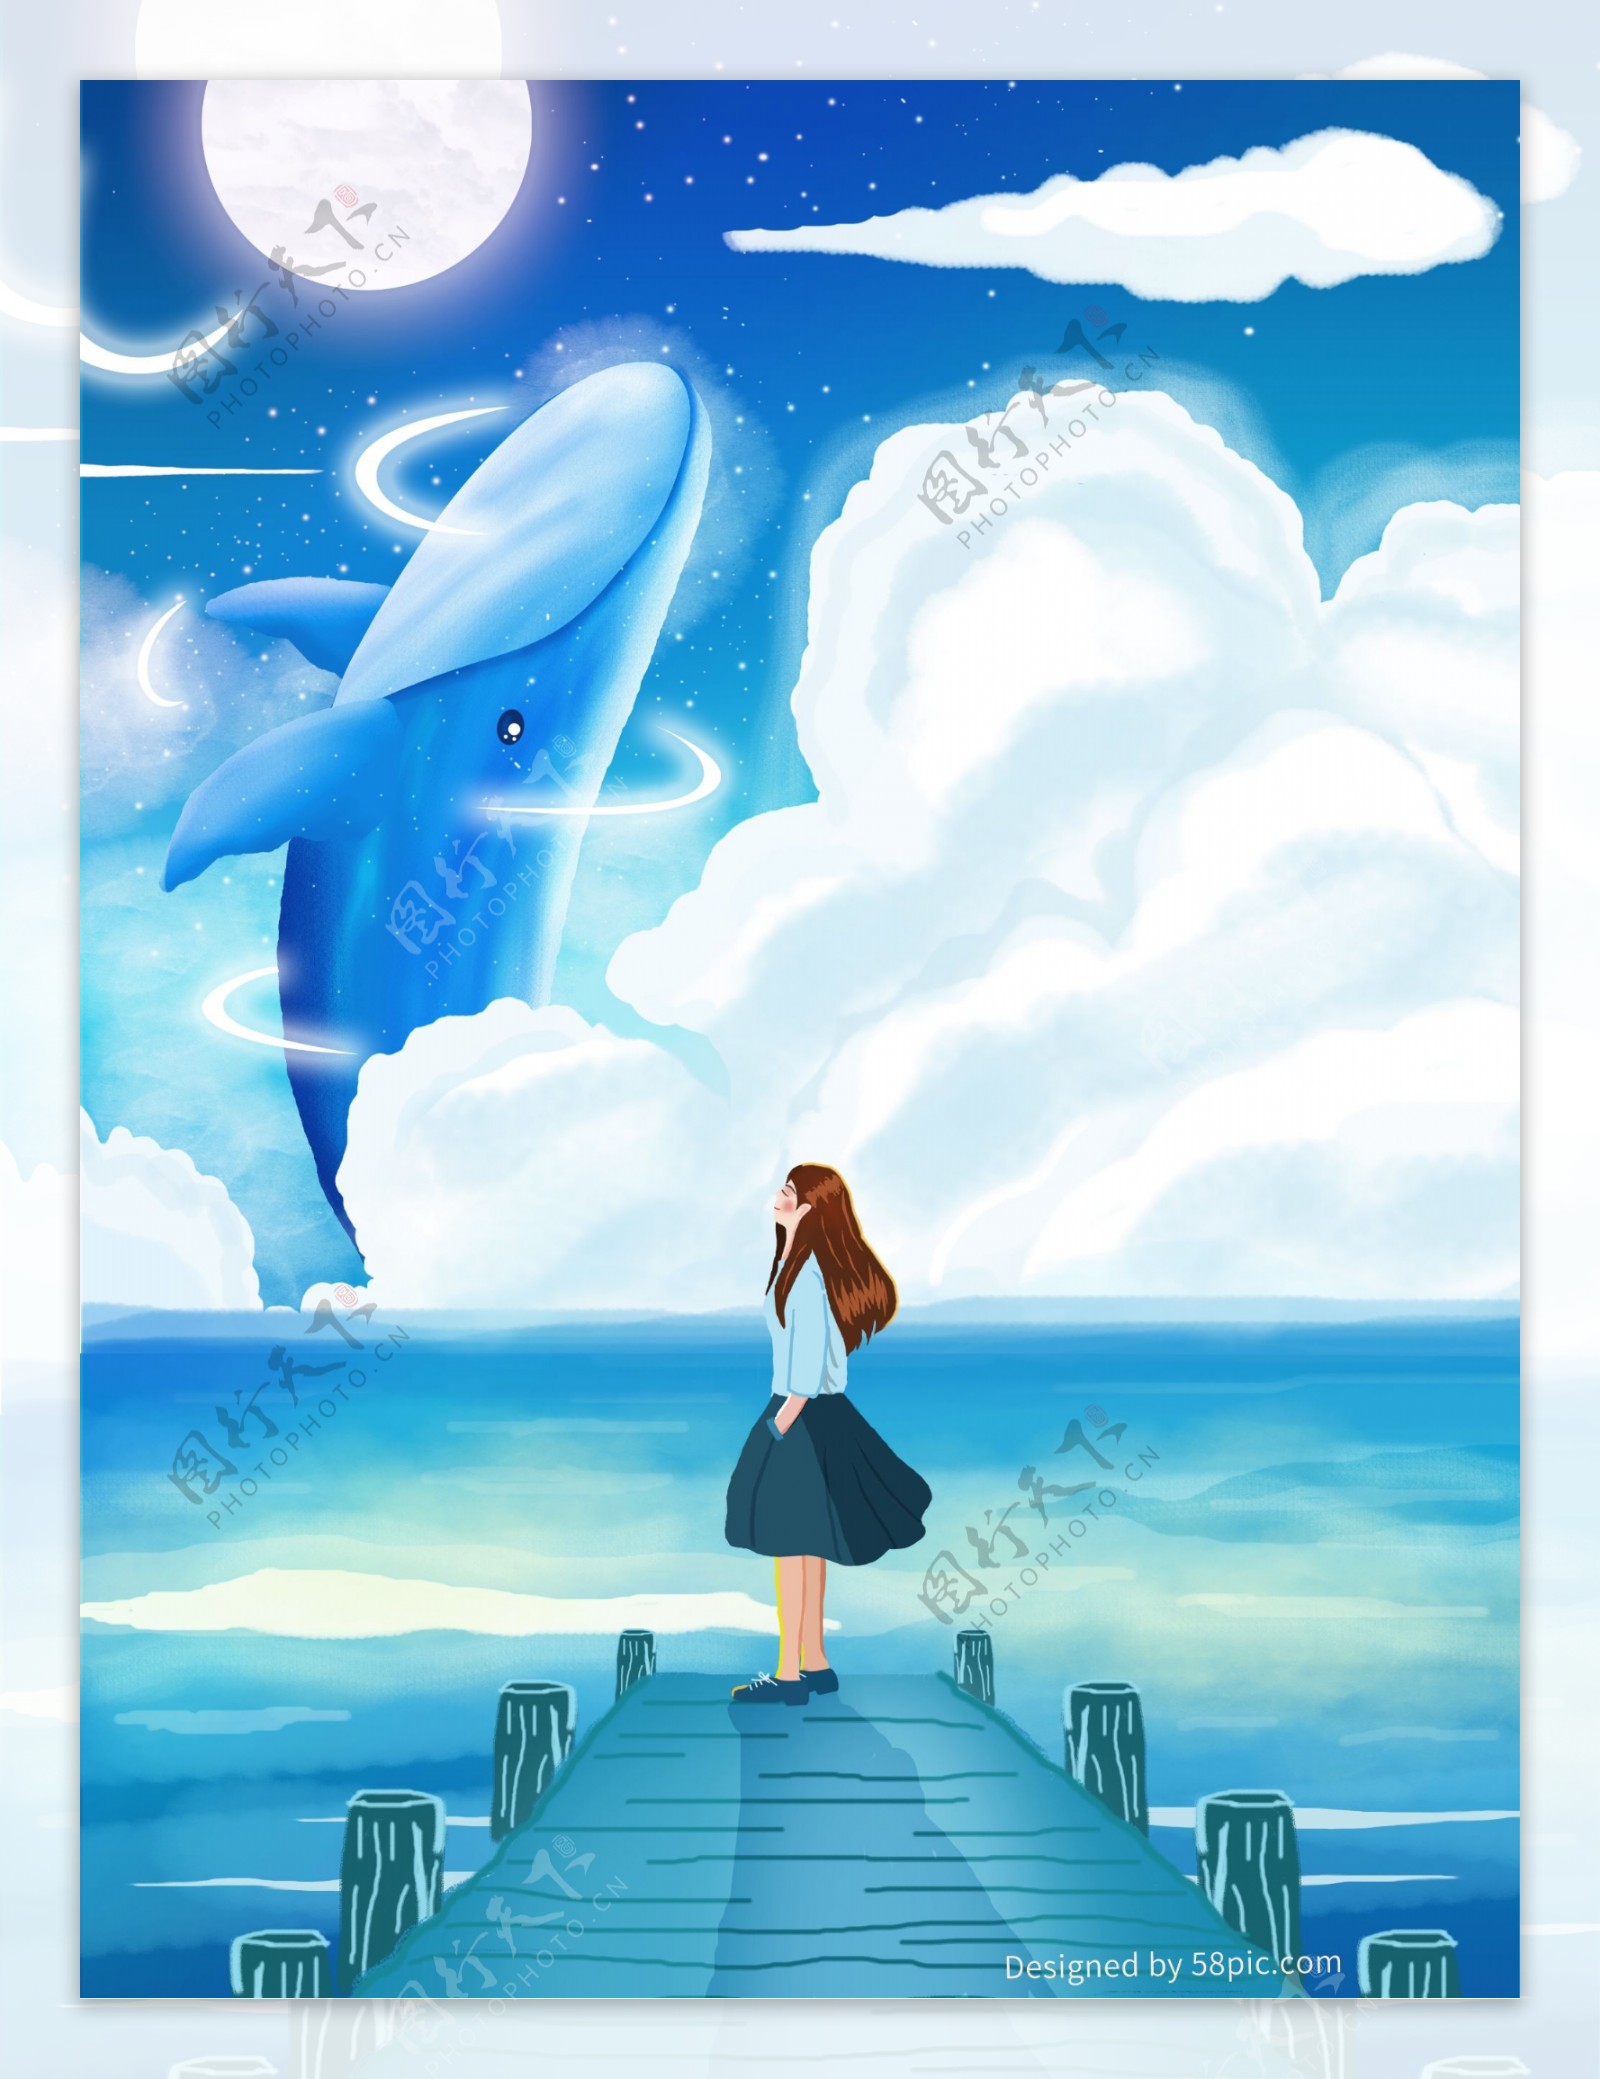 原创唯美蓝色鲸鱼与女孩治愈系插画